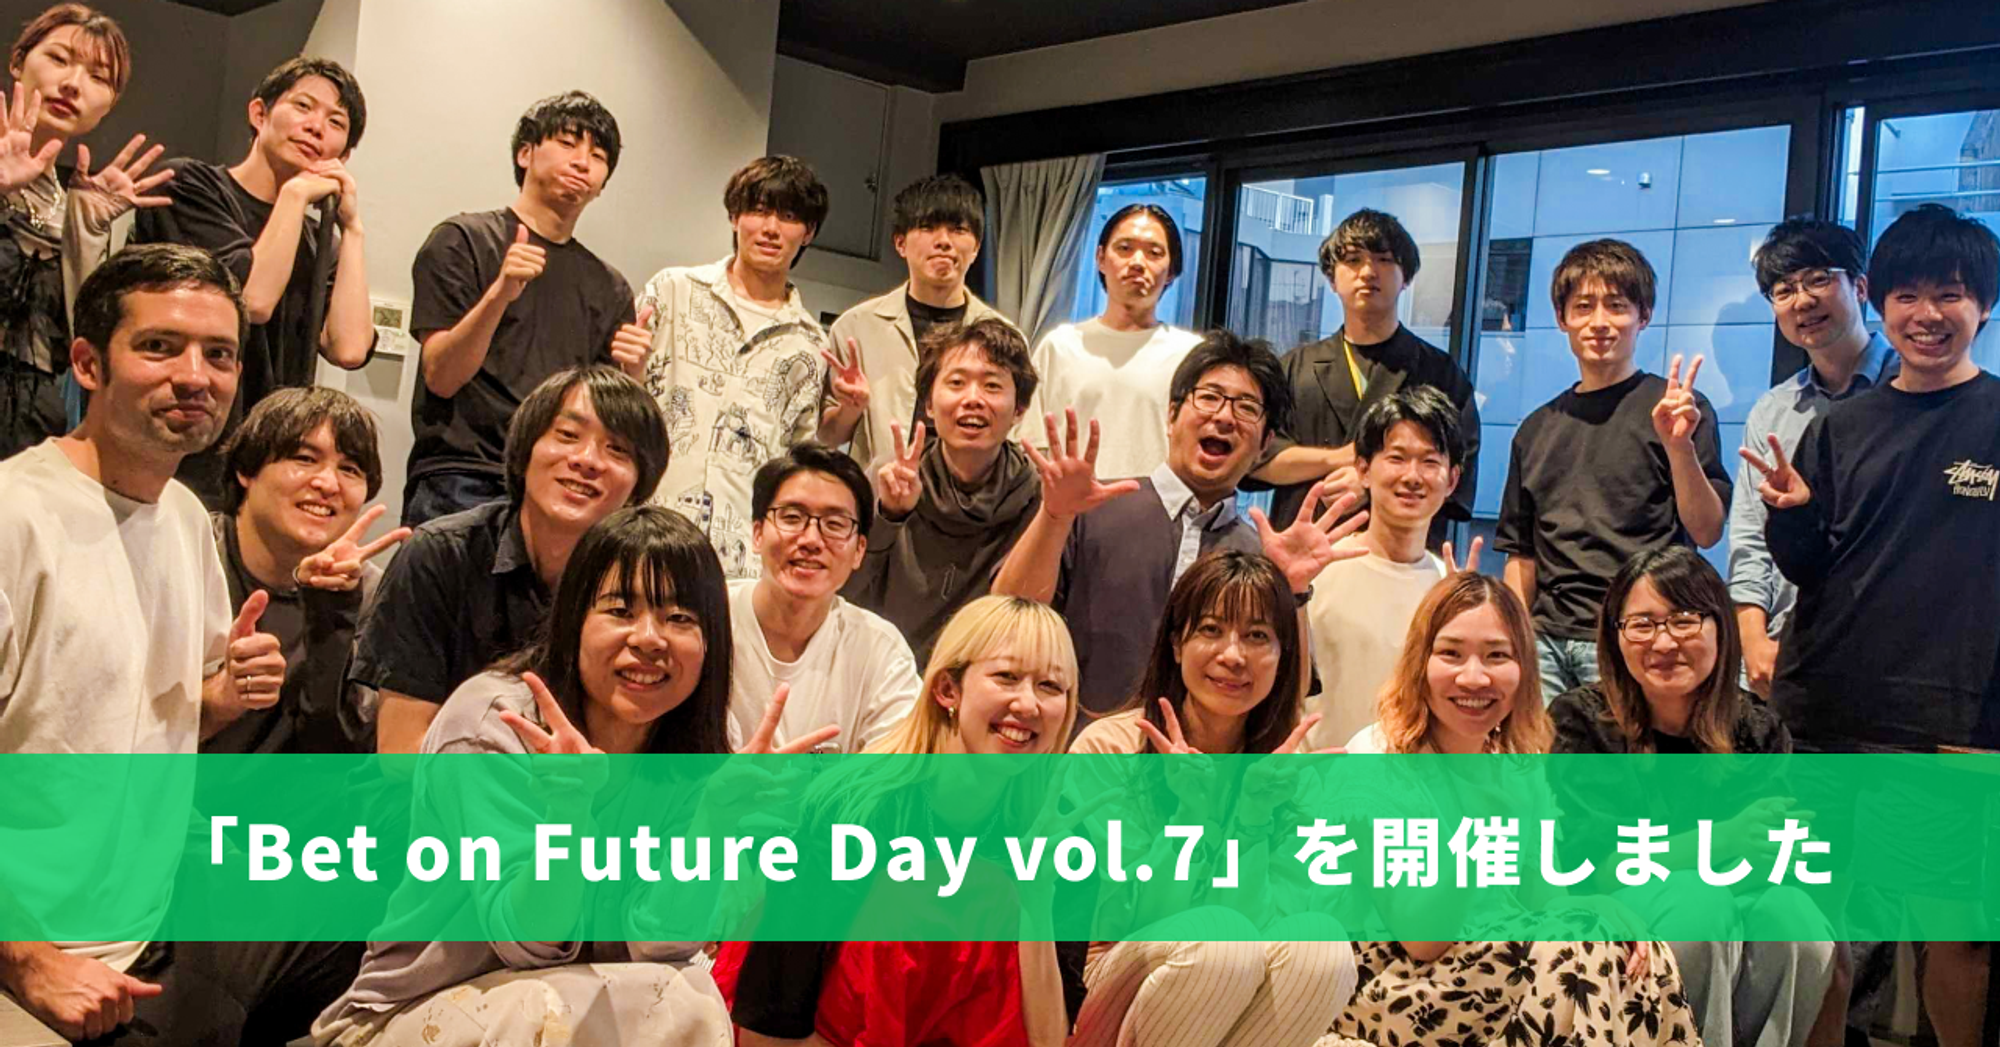 【イベントレポート】Bet on Future Day vol.7